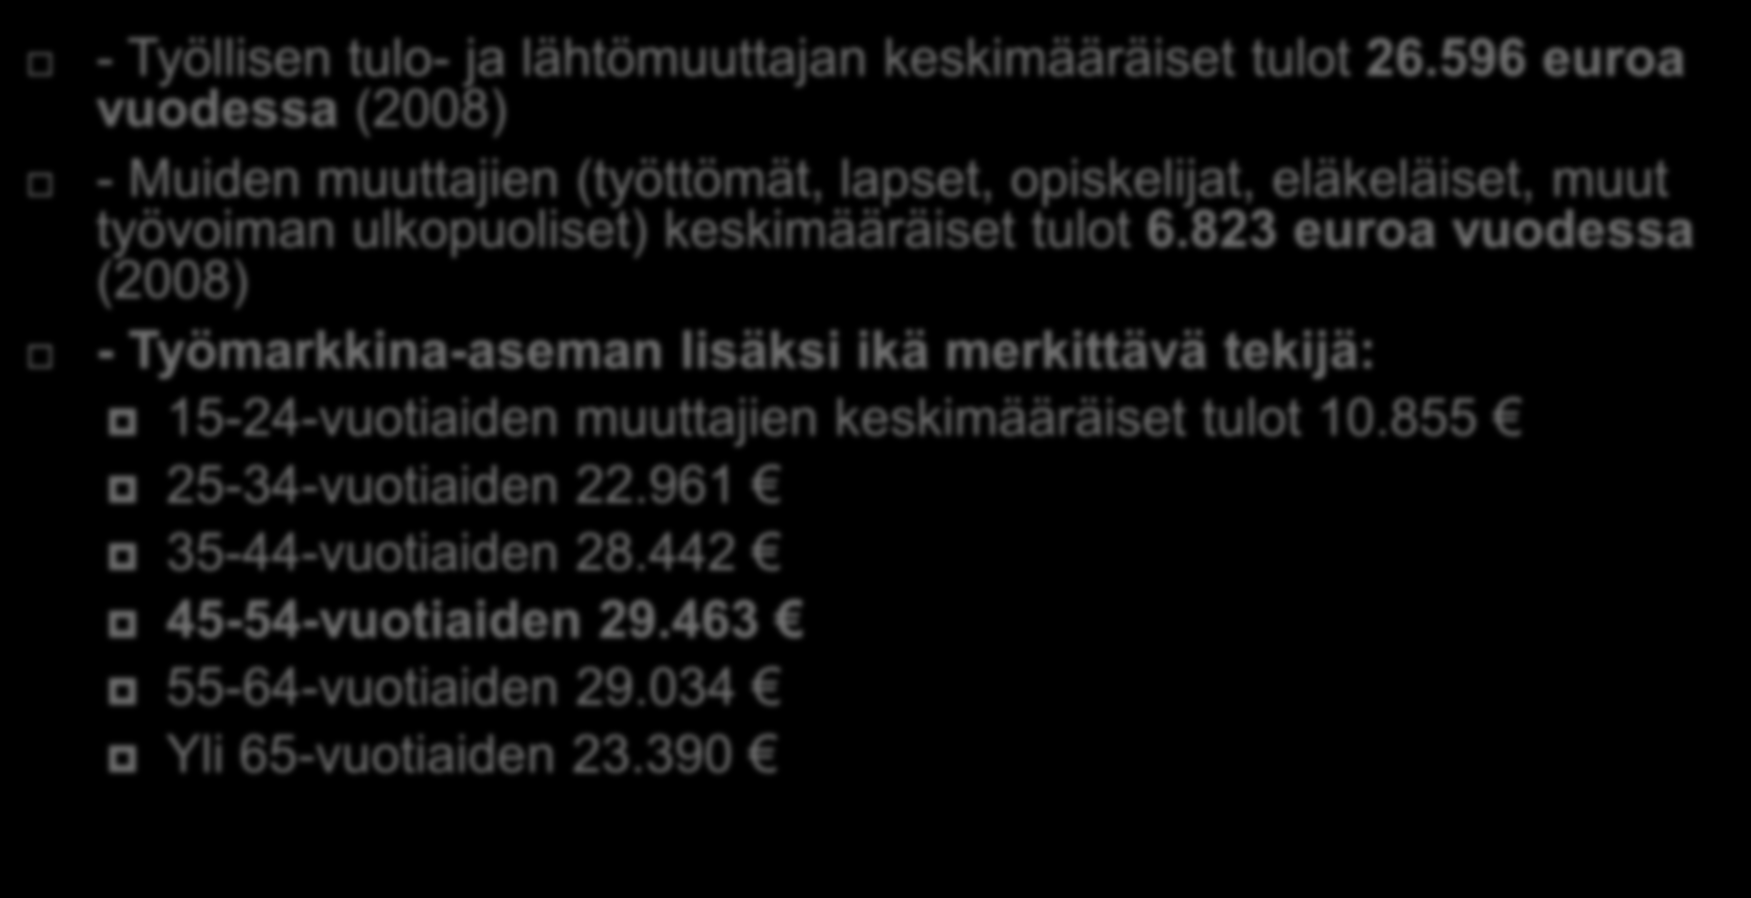 Timo Aro 2011 Miksi työlliset muuttajat avainasemassa? - Työllisen tulo- ja lähtömuuttajan keskimääräiset tulot 26.